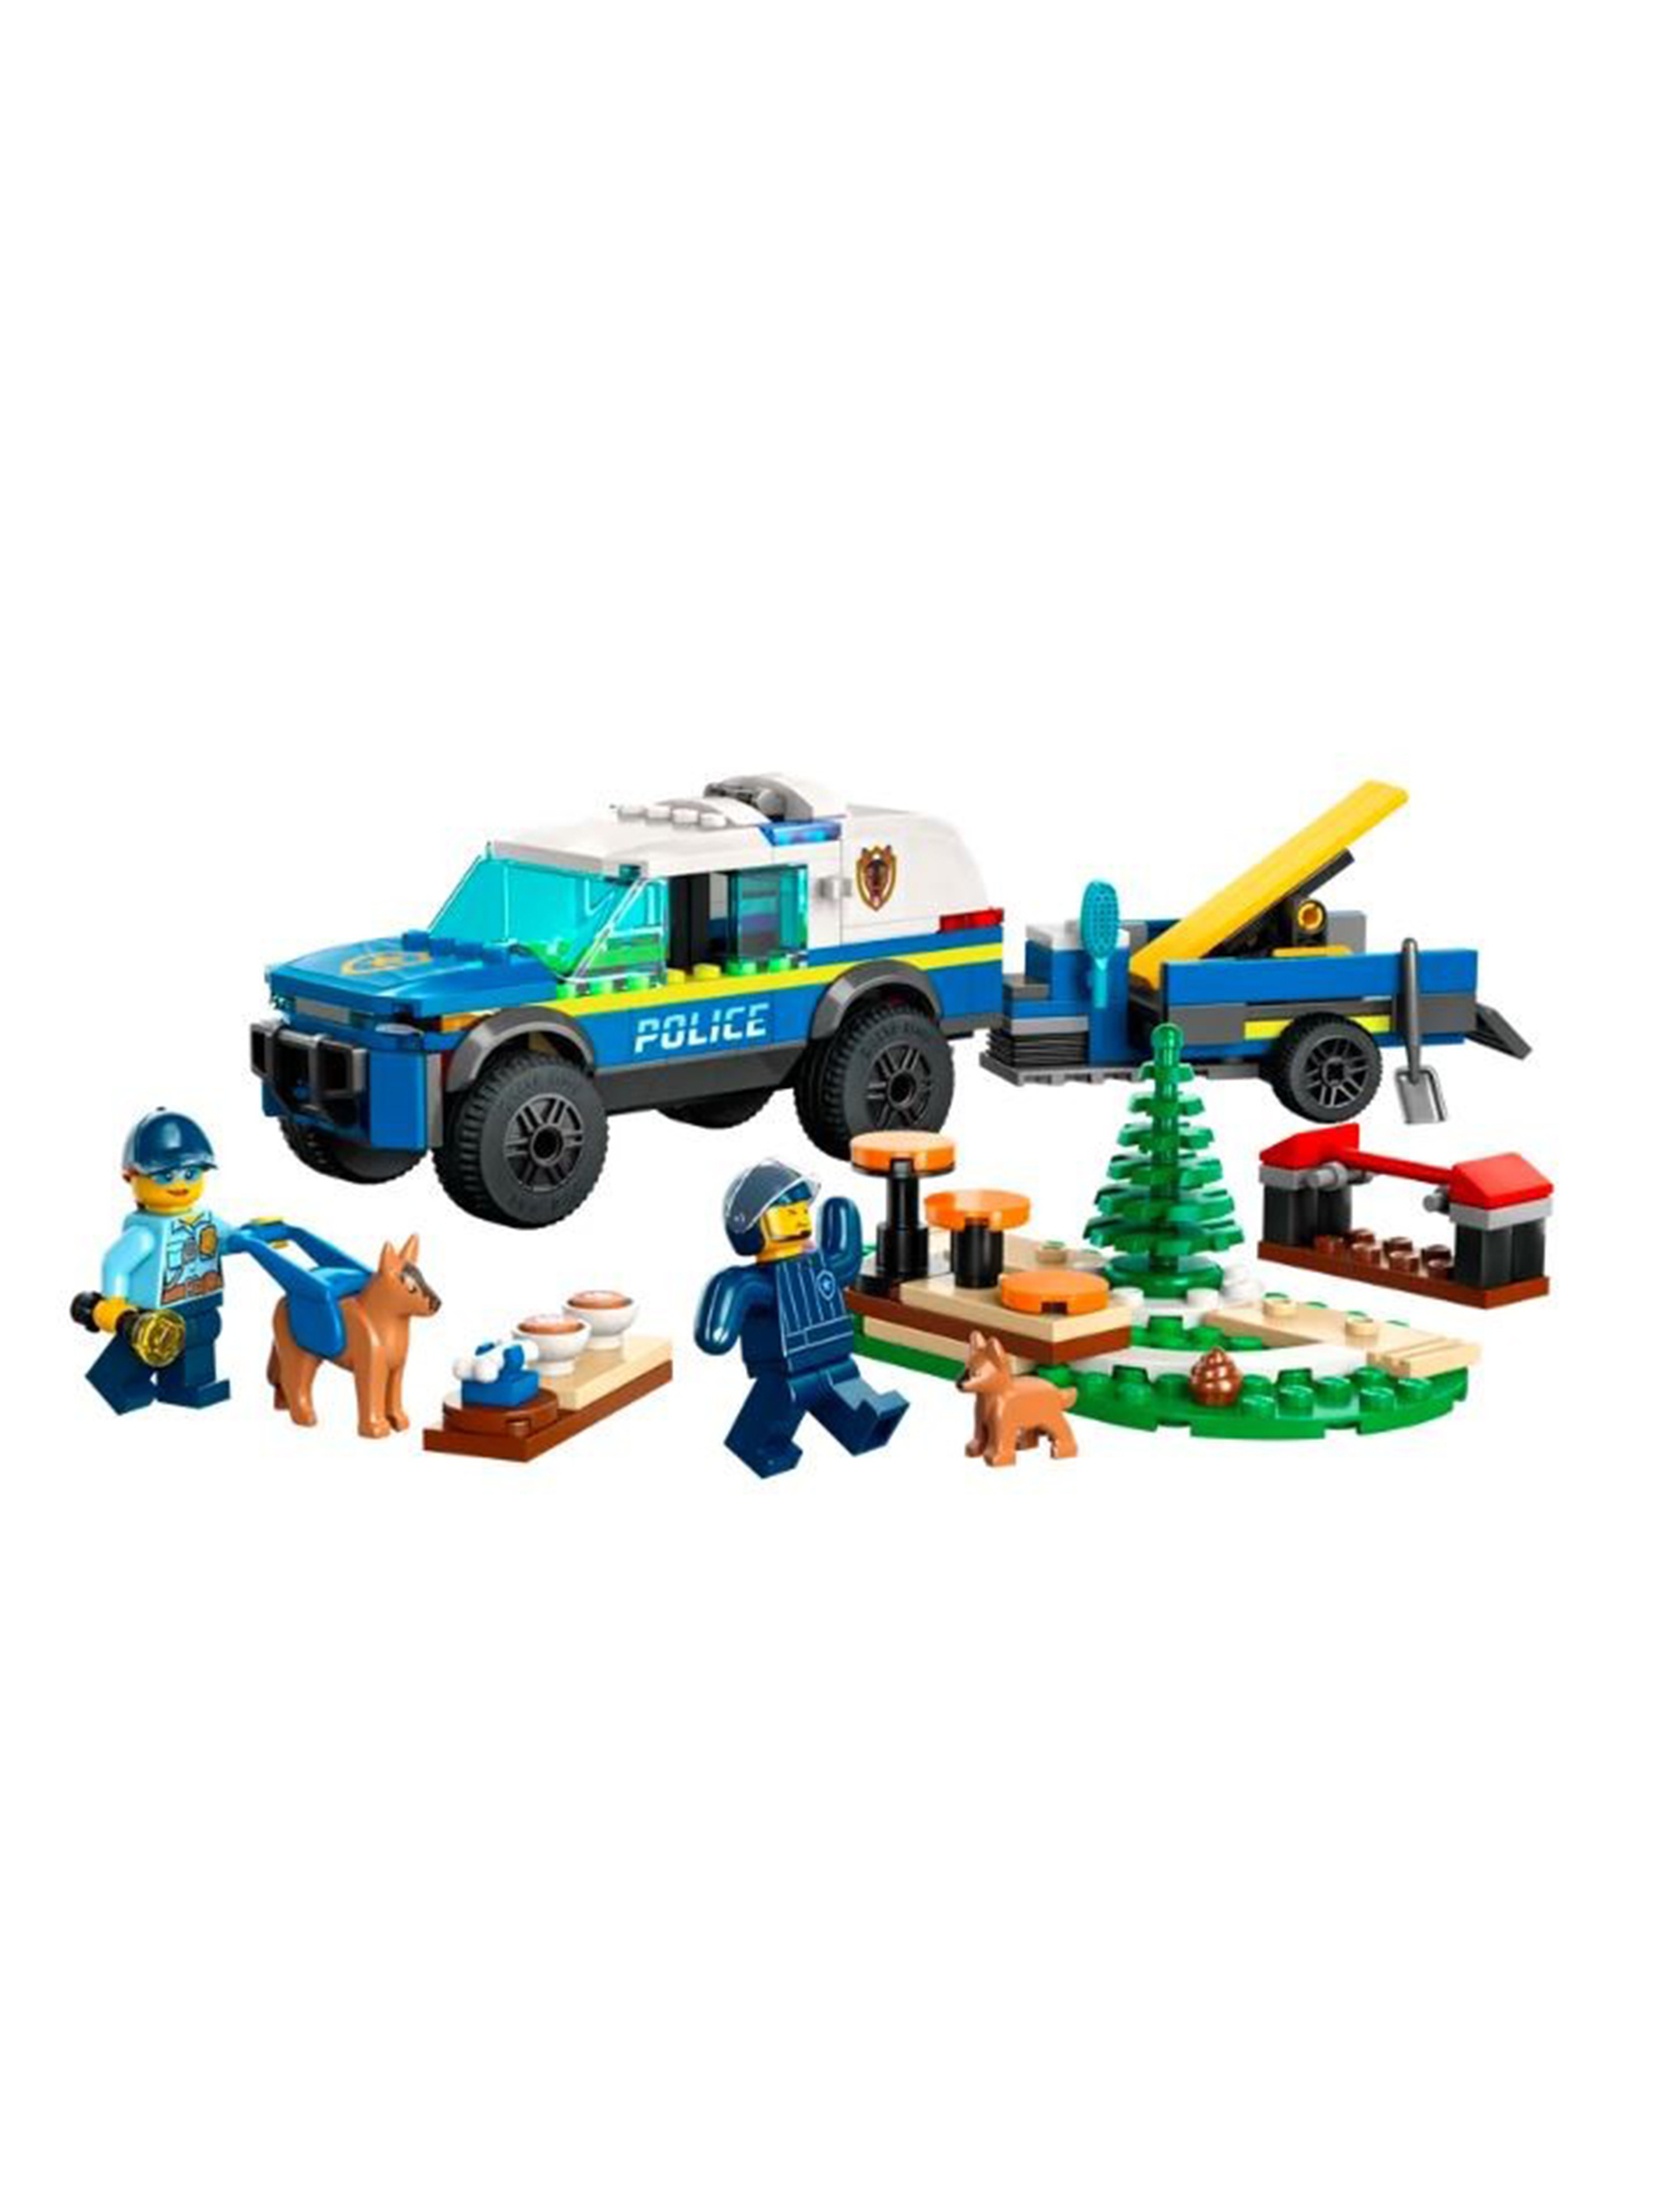 Klocki LEGO City 60369 Szkolenie psów policyjnych w terenie - 197 elementów, wiek 5 +